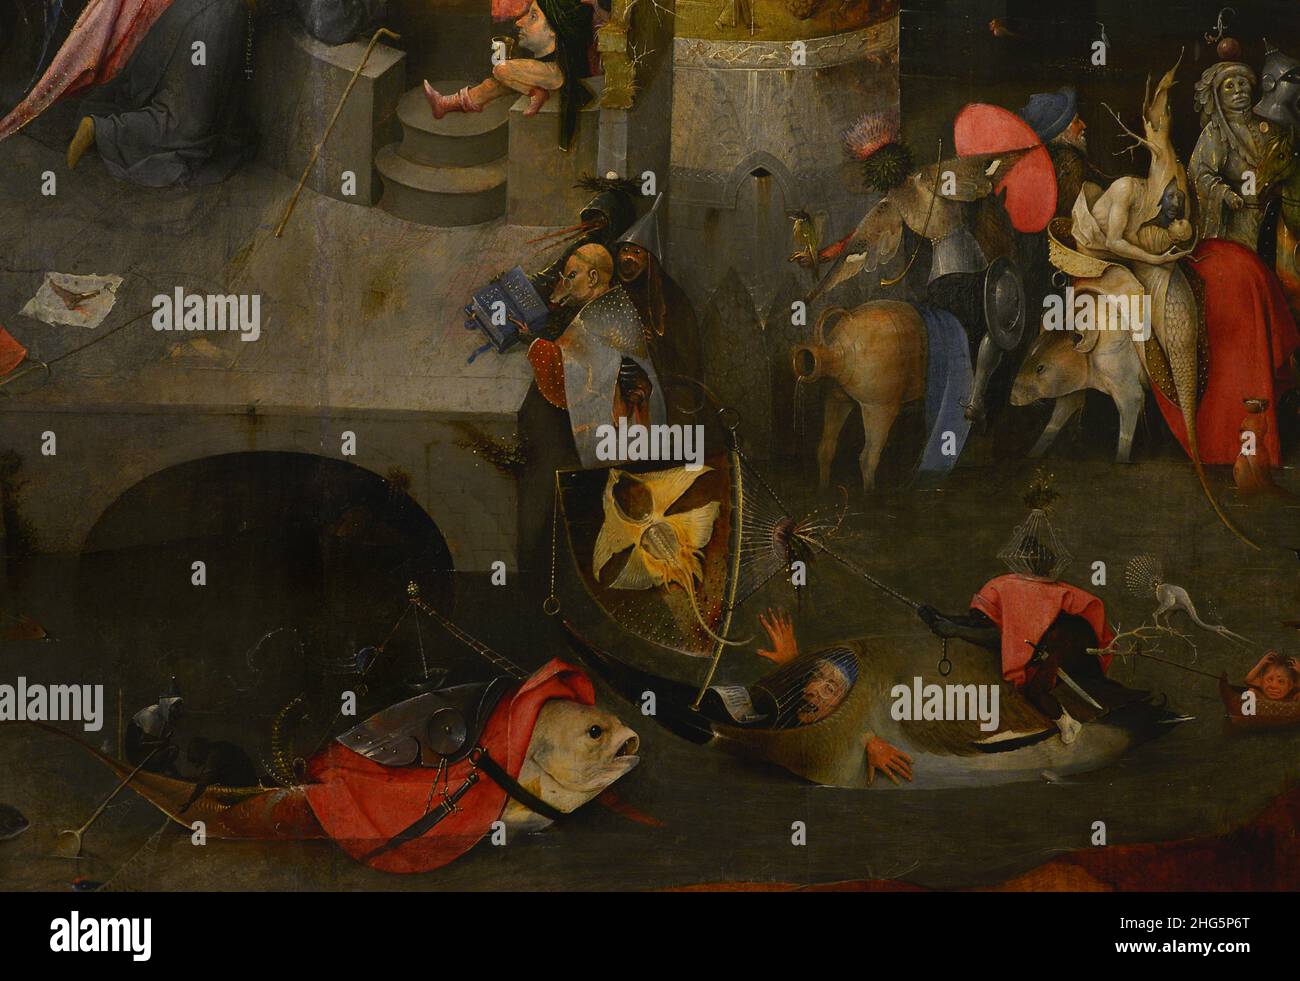 Hieronymus Bosch (1450-1516). Pittore olandese. Trittico delle Temptazioni di Sant'Antonio, 1498. Pannello centrale. Particolare della parte inferiore, raffigurante la tentazione di Sant'Antonio. Museo Nazionale di Arte Antica Lisbona, Portogallo. Foto Stock